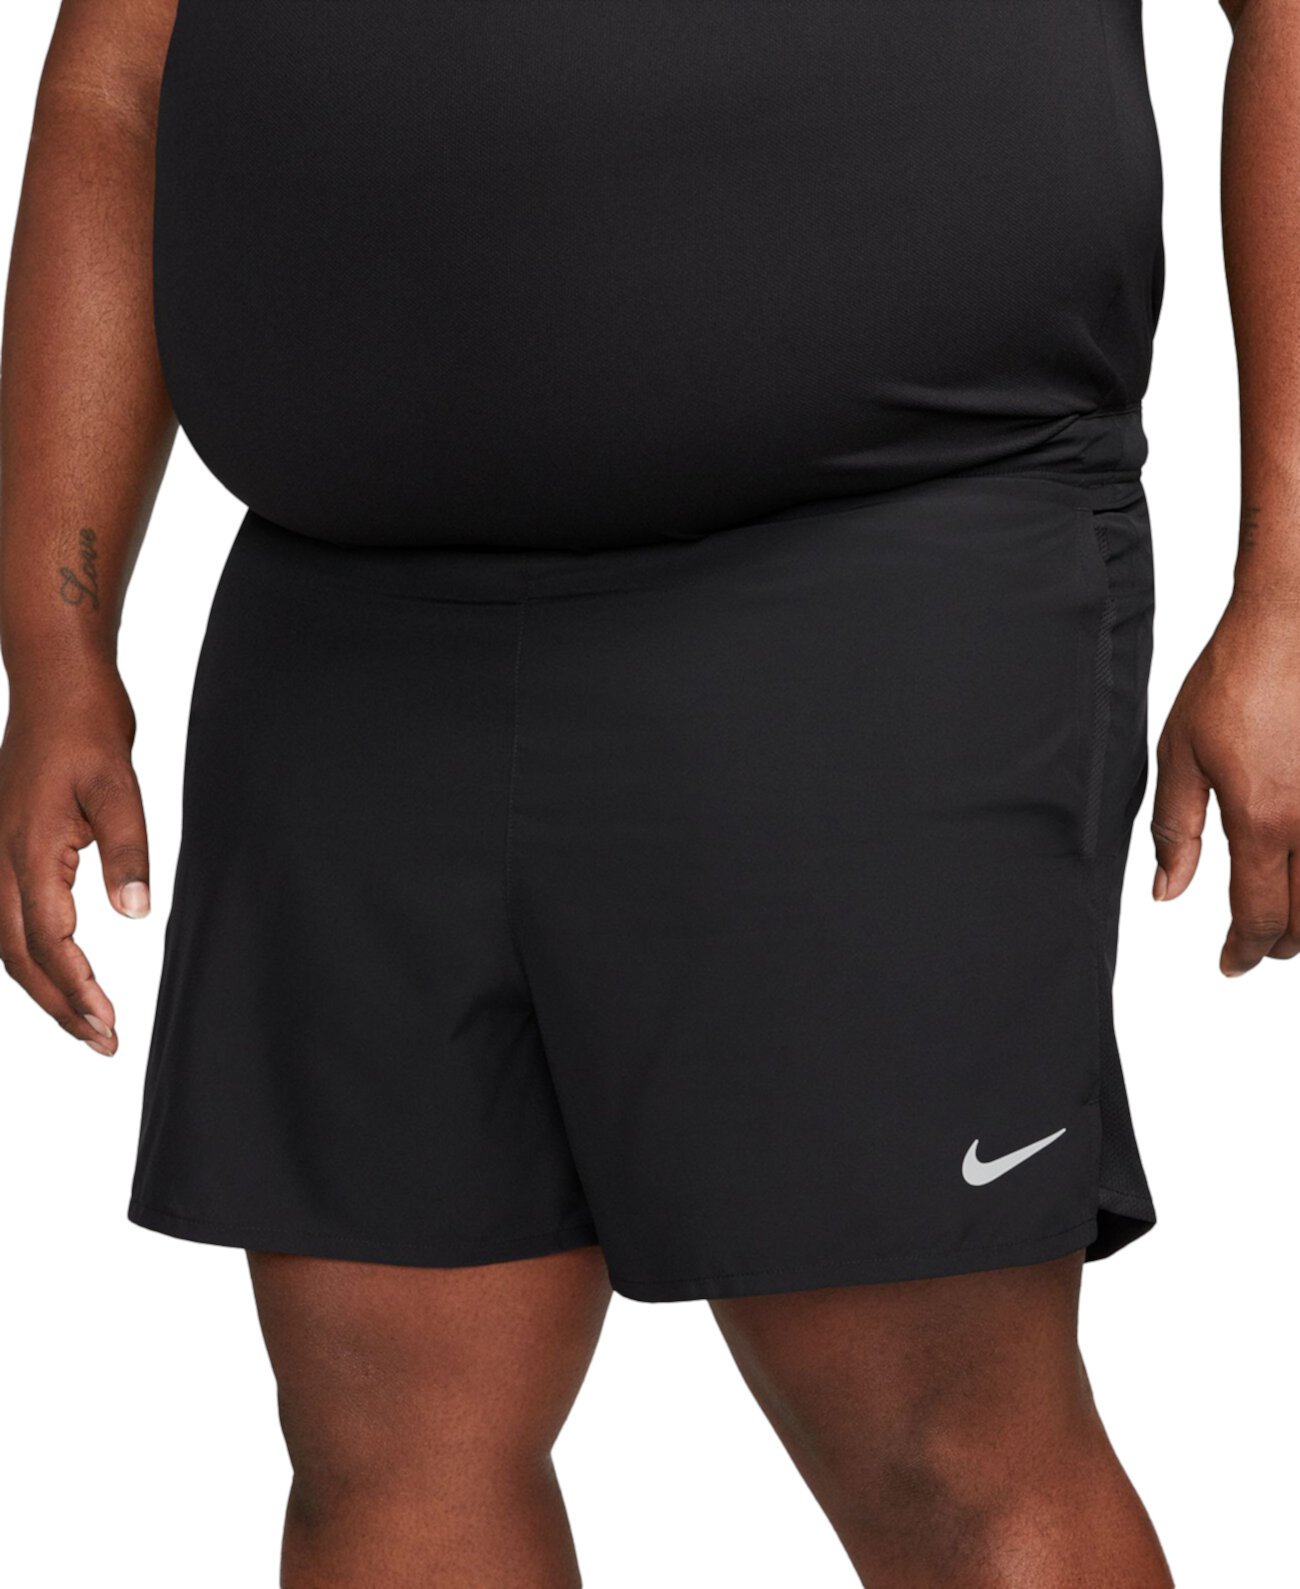 Мужские беговые шорты Challenger Dri-FIT на короткой подкладке 5 дюймов Nike